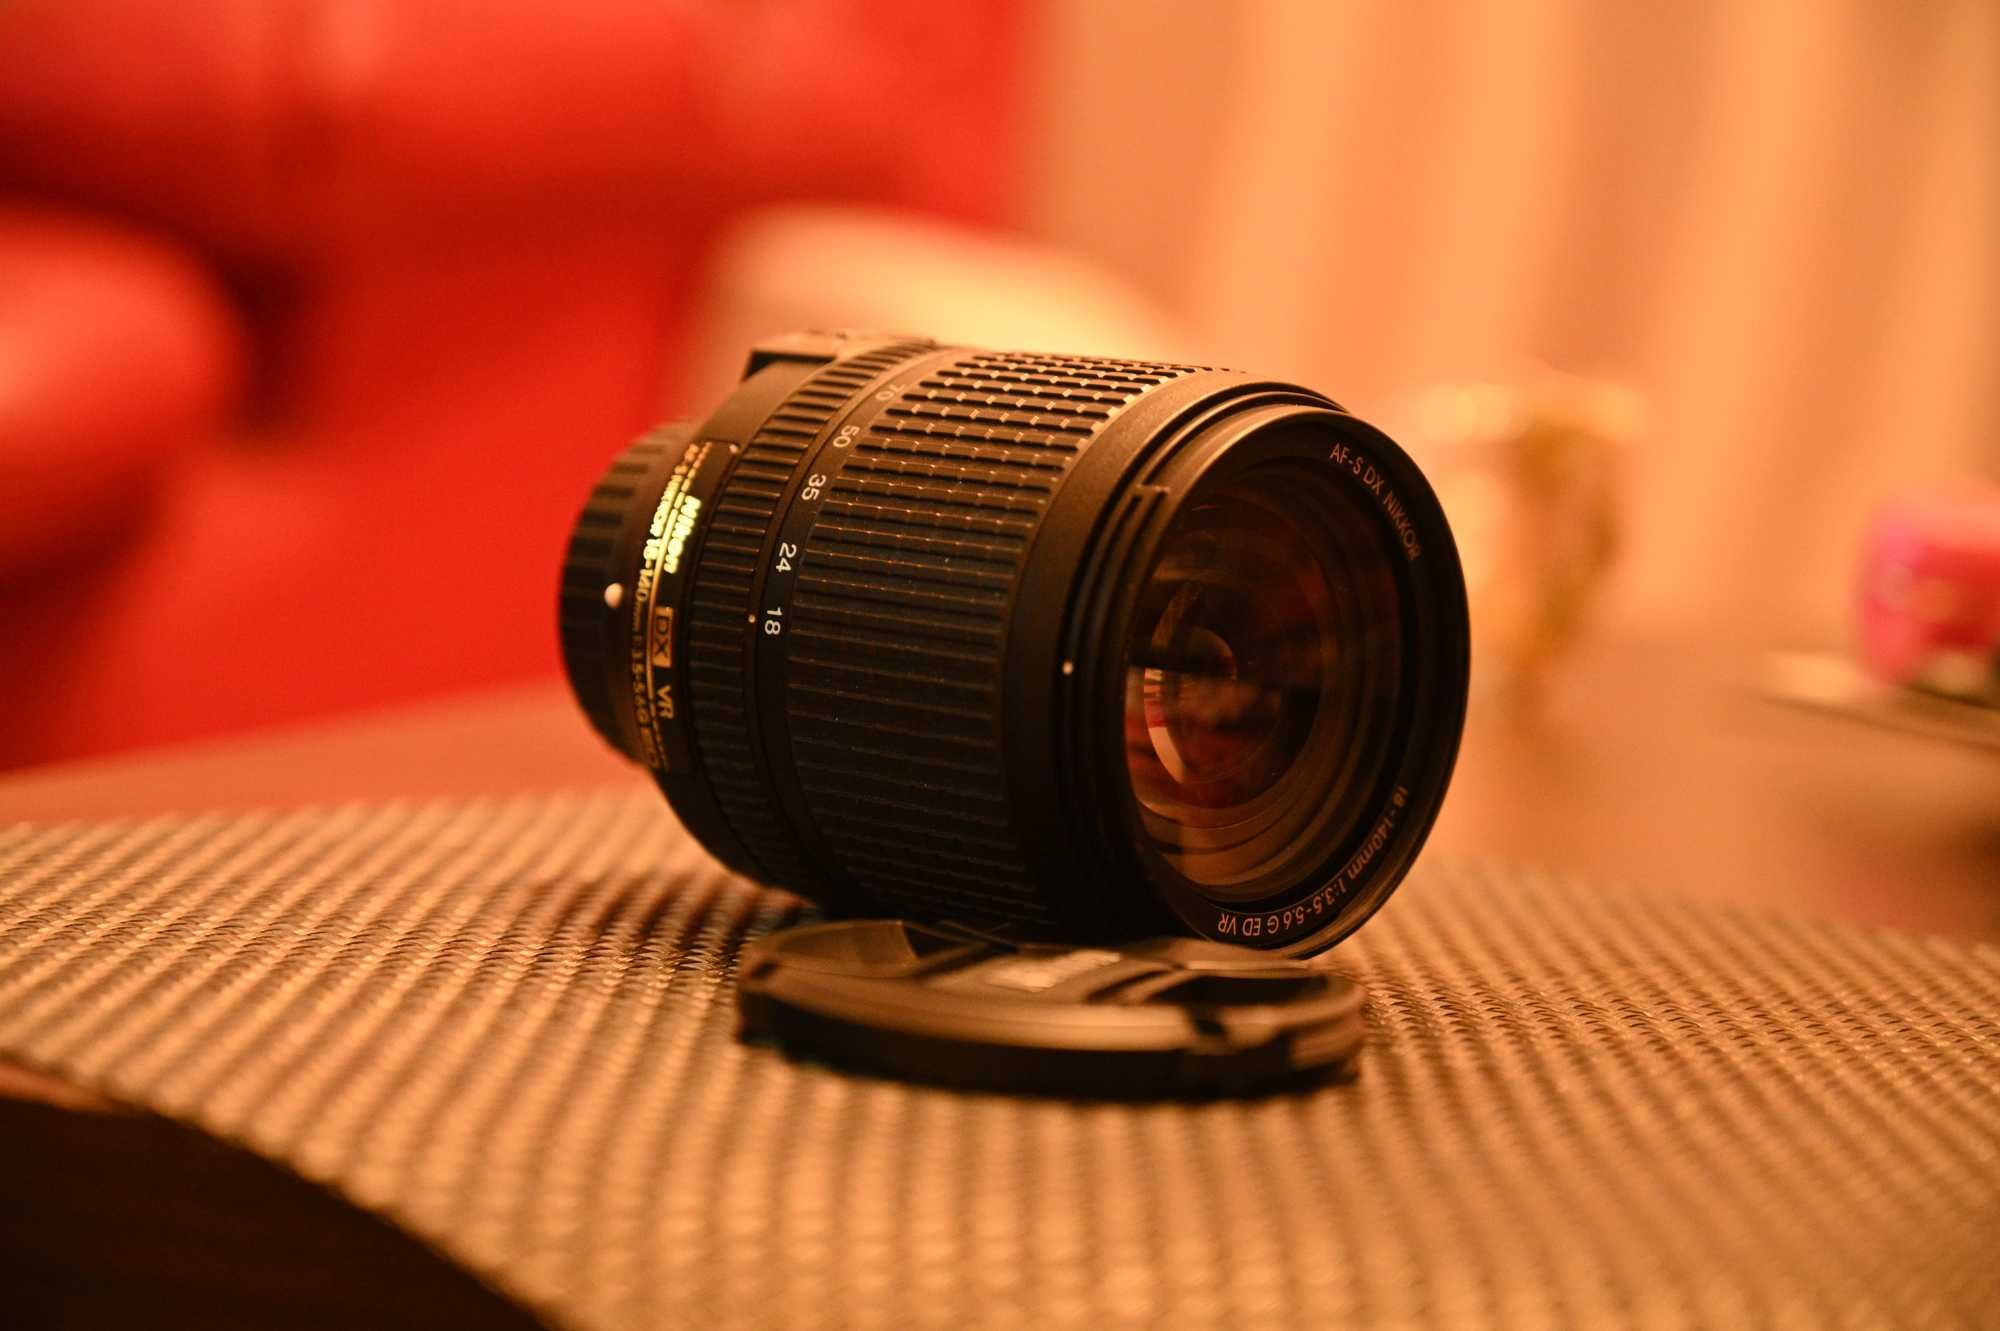 Obiectiv Nikon 18-140mm f/3.5-5.6G ED VR AF-S DX NIKKOR